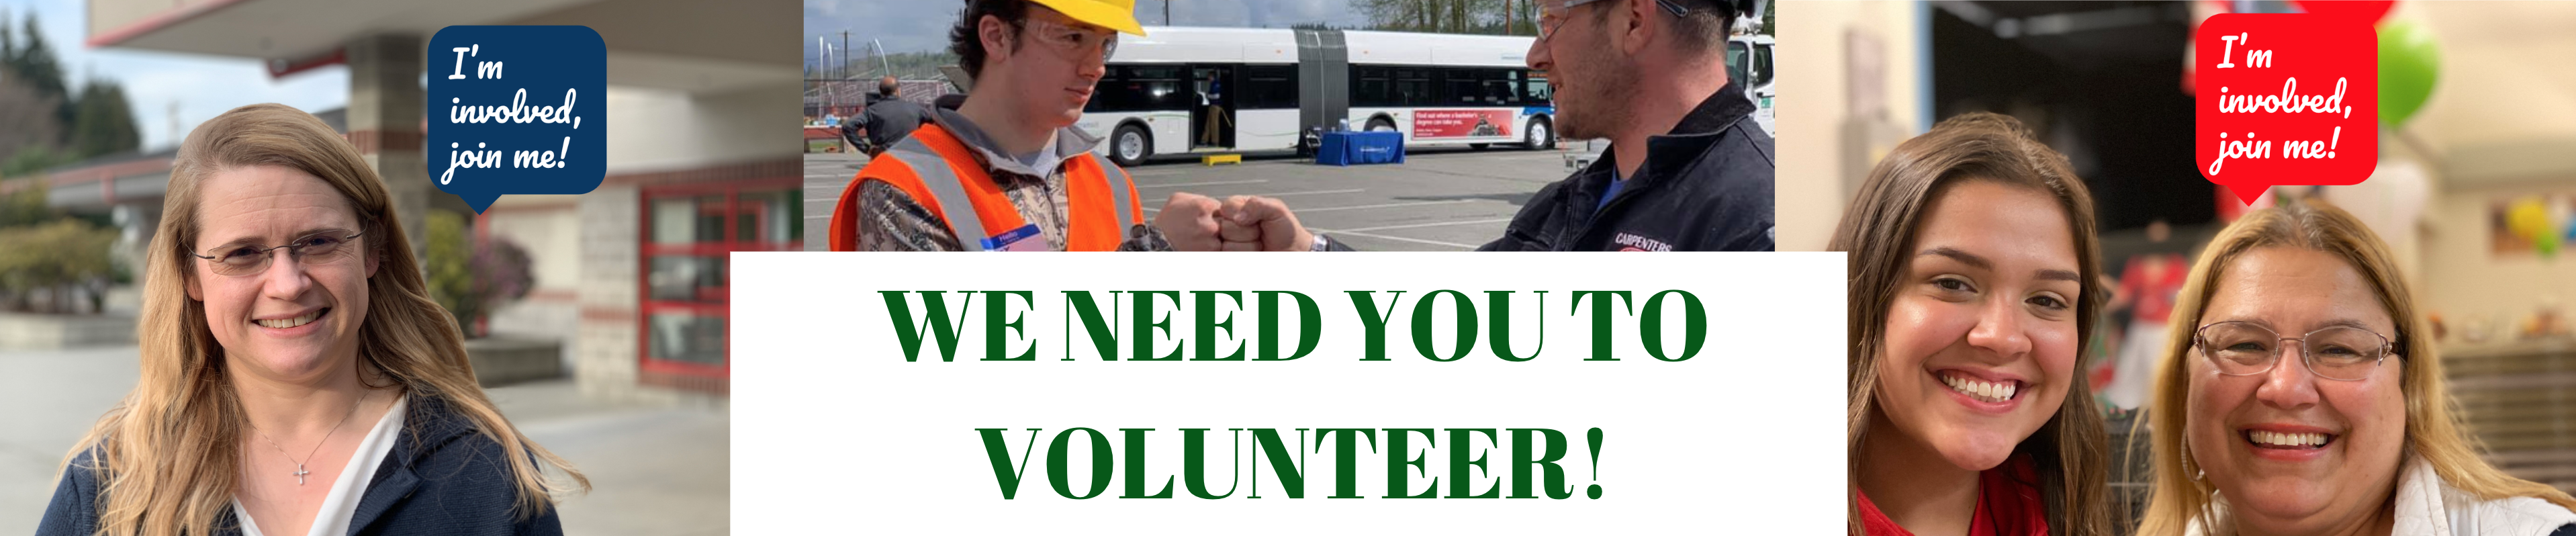 We need you to volunteer!